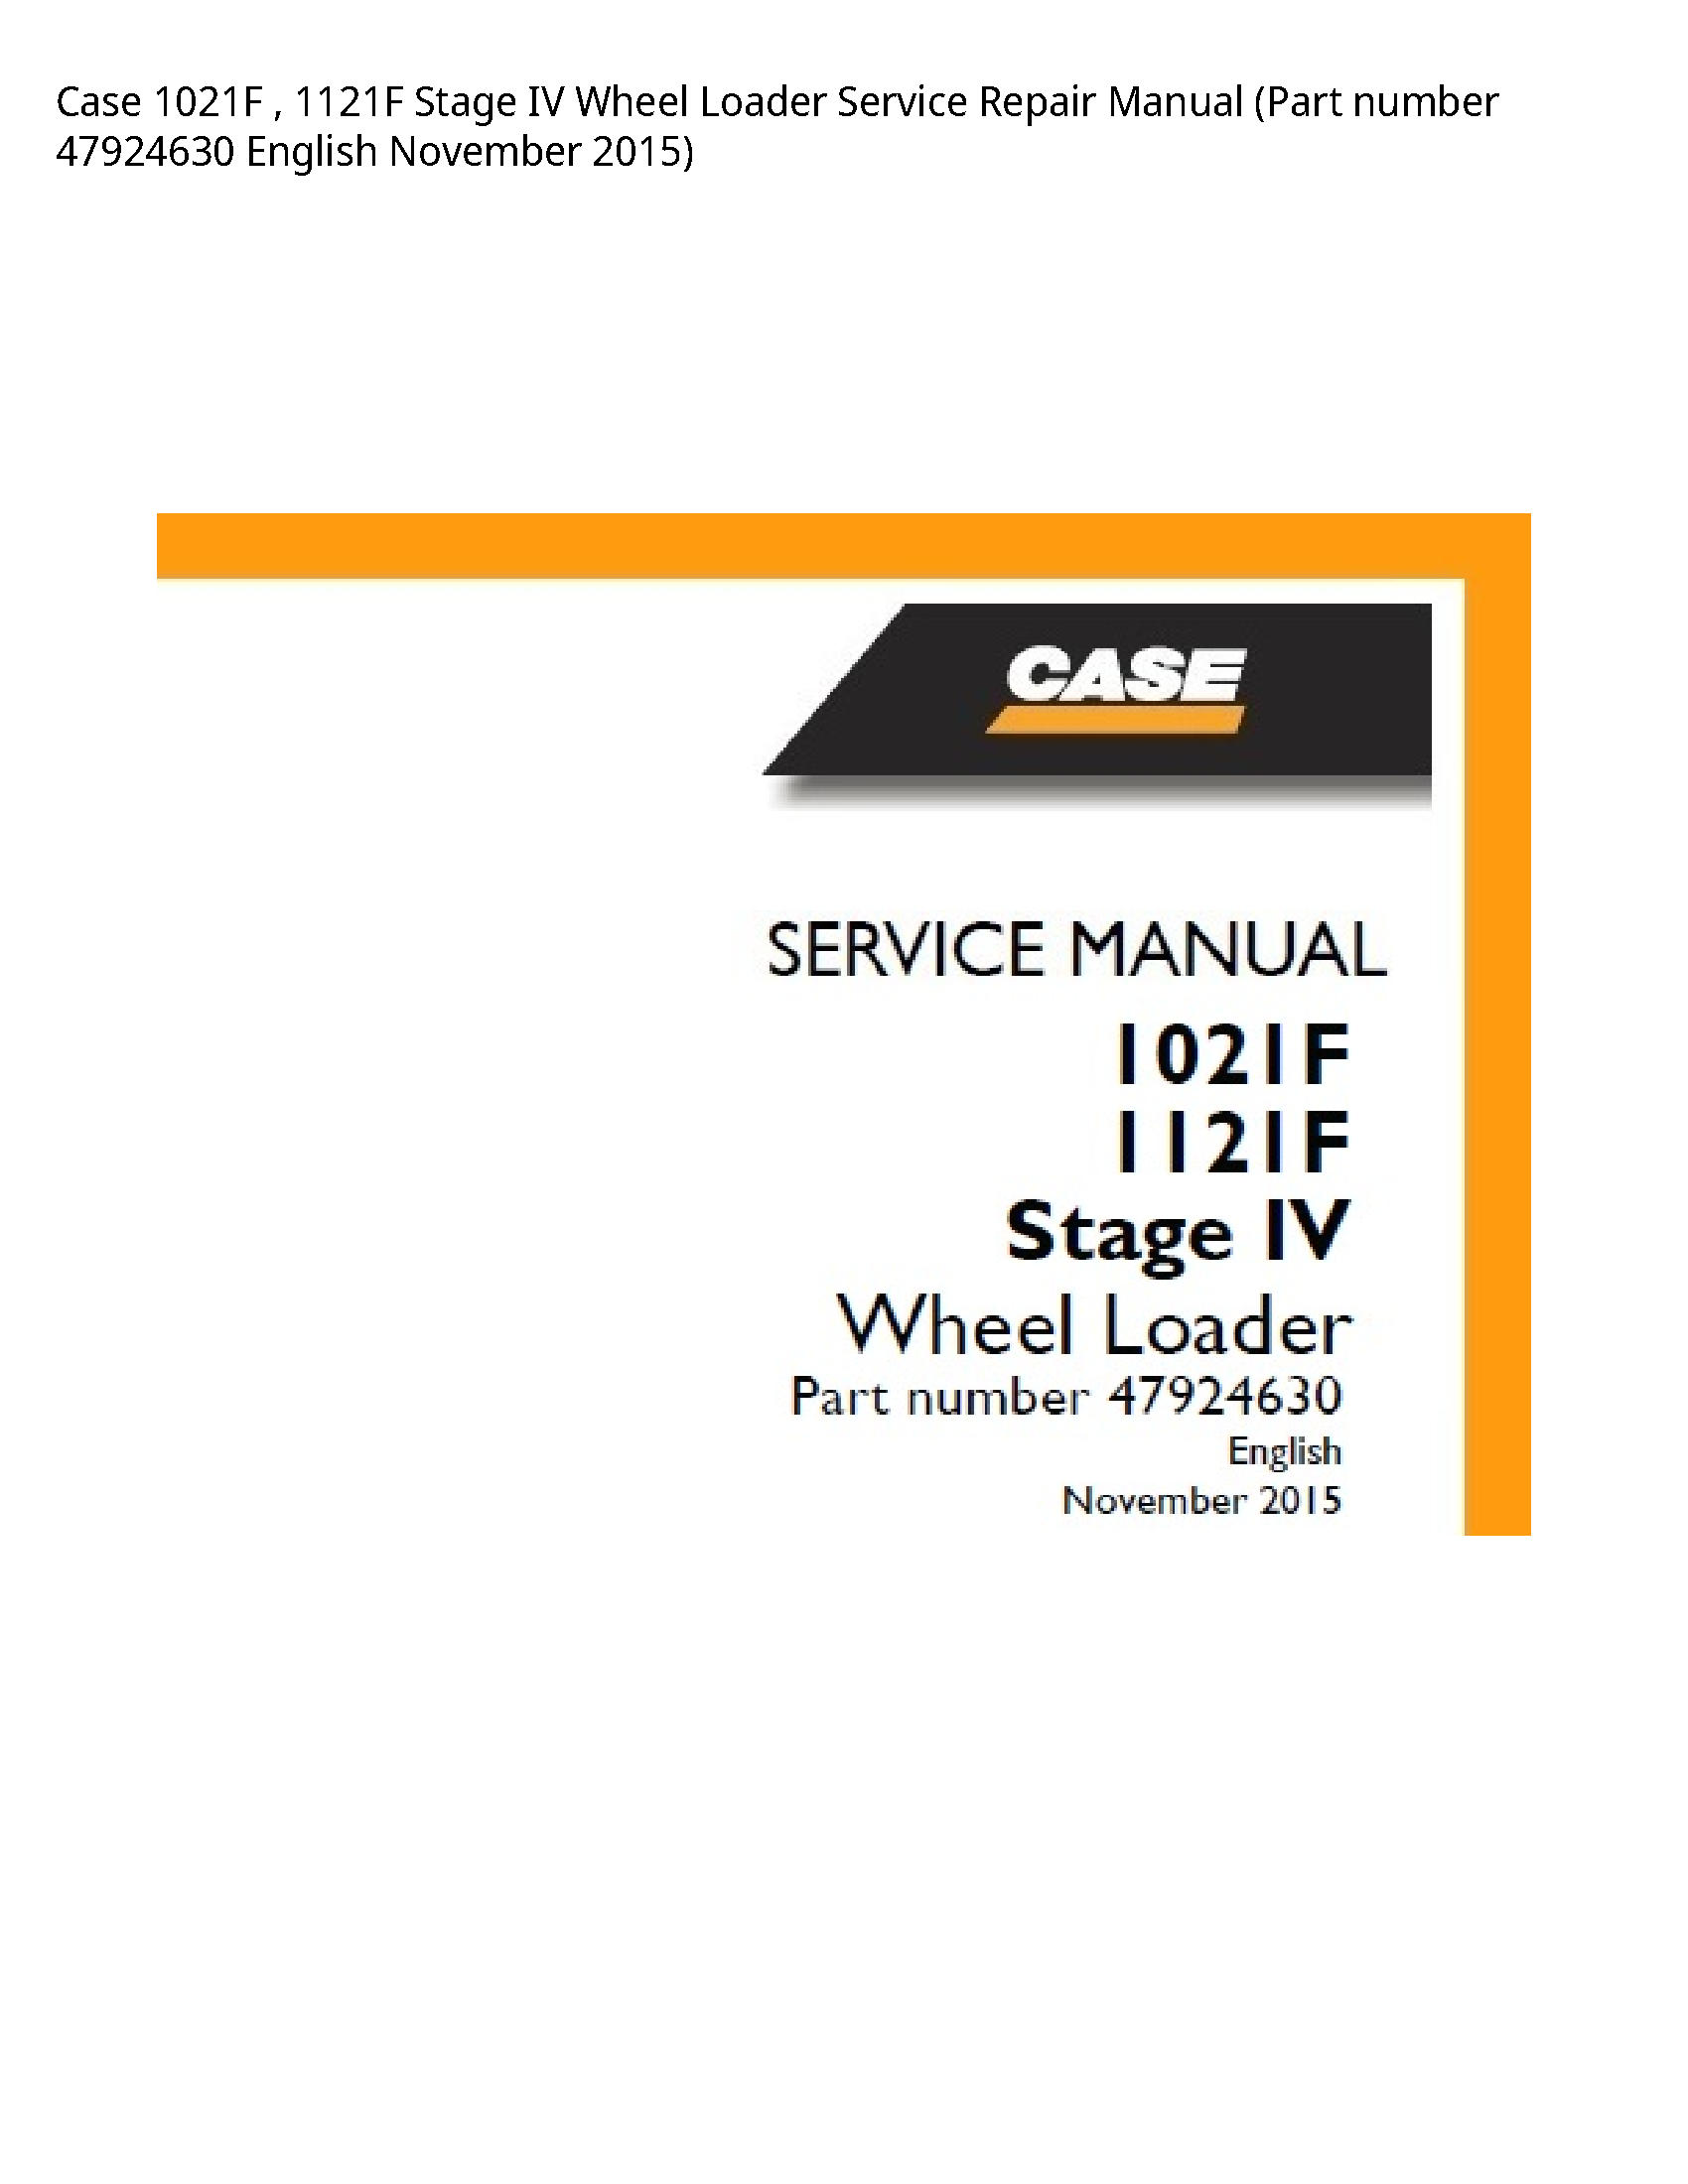 Case/Case IH 1021F Stage IV Wheel Loader manual